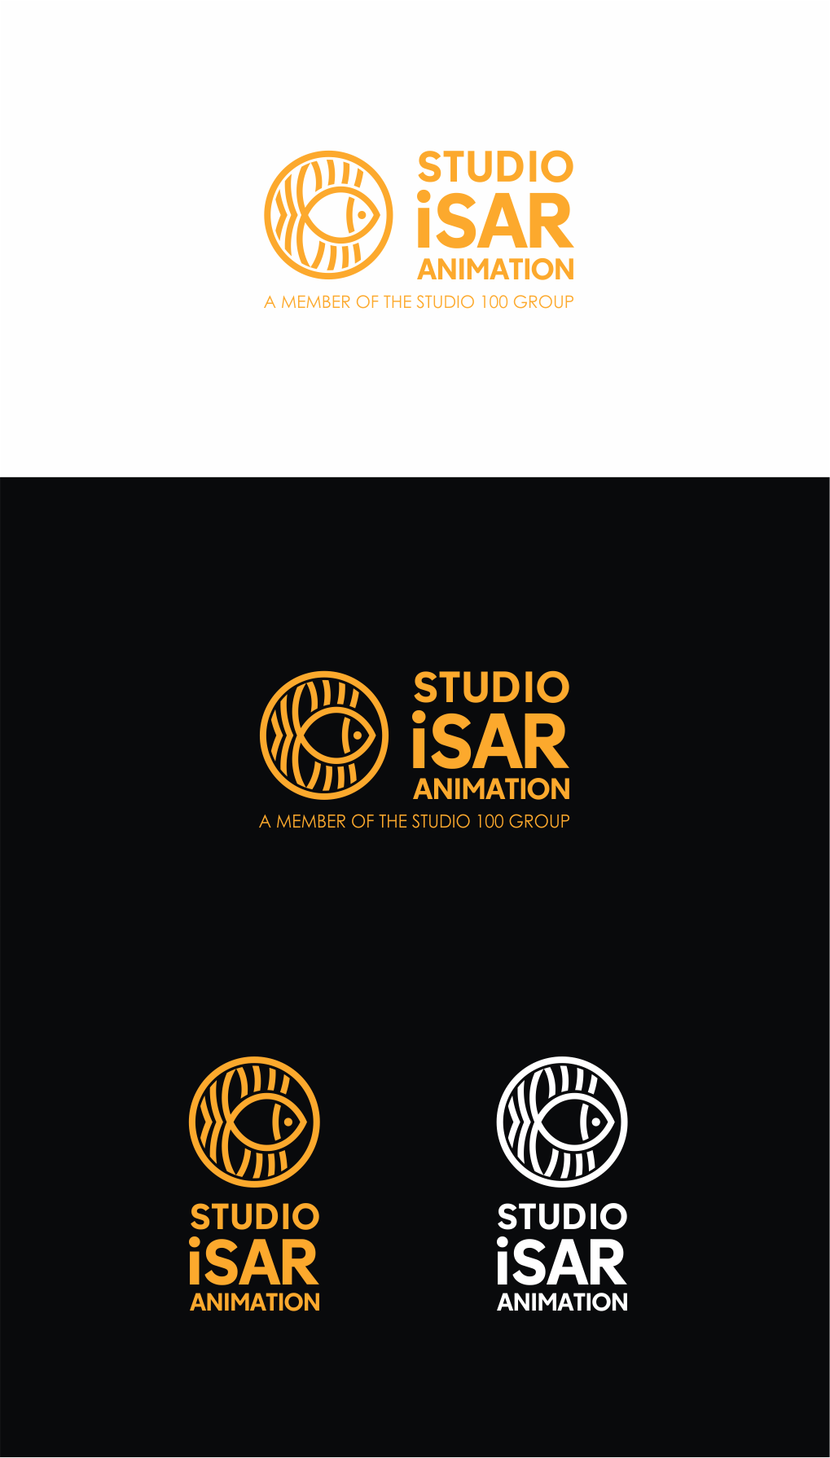 Логотип и фирменный стиль для студии мультипликации Studio Isar Animation  -  автор Лариса Карасева